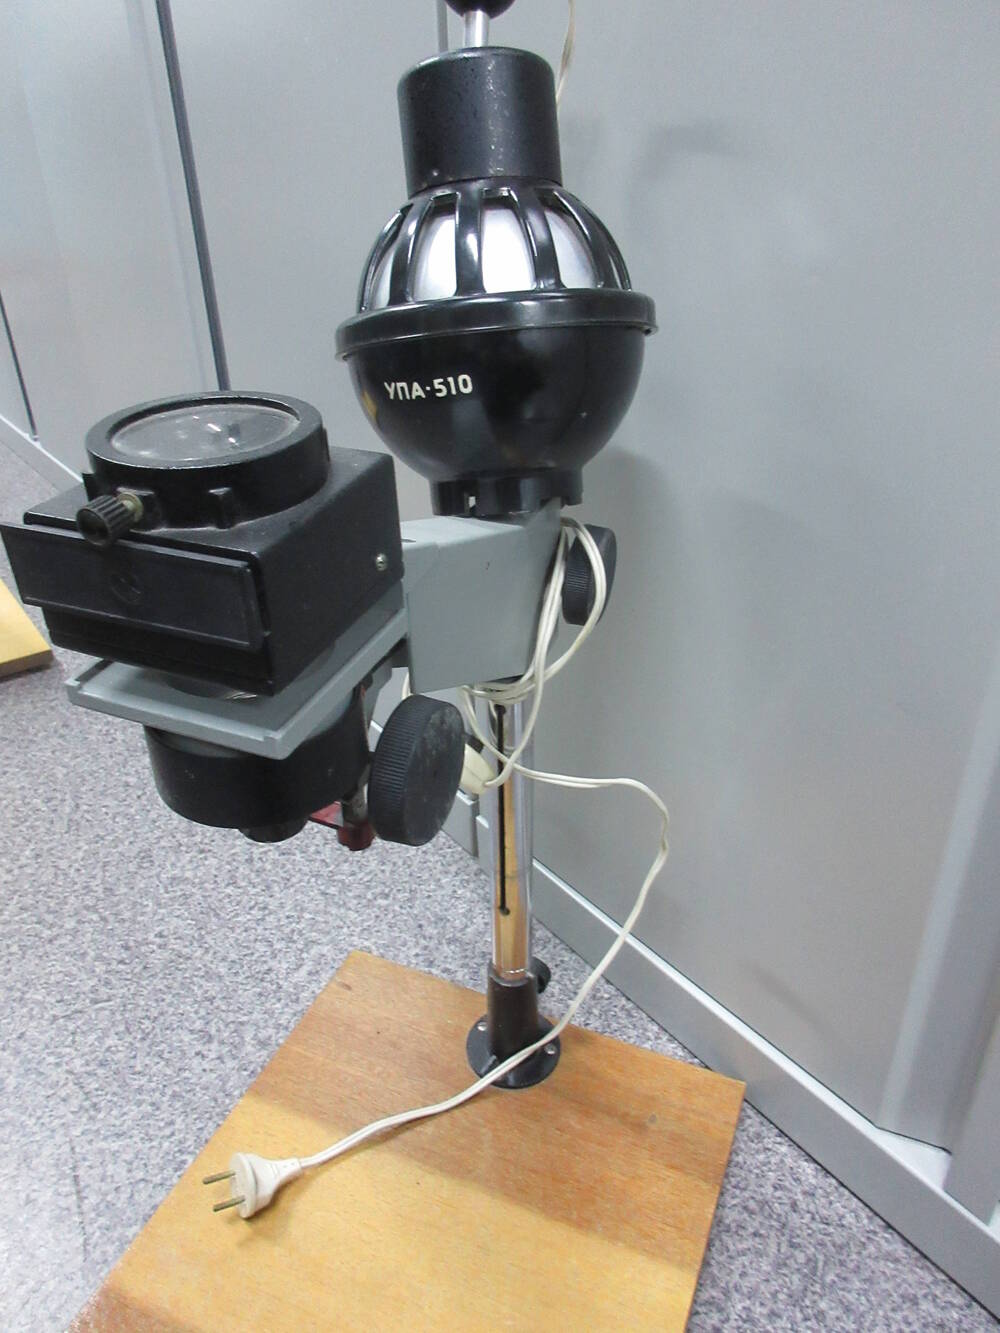 Фотоувеличитель - прибор для печати фотографий УПА-510